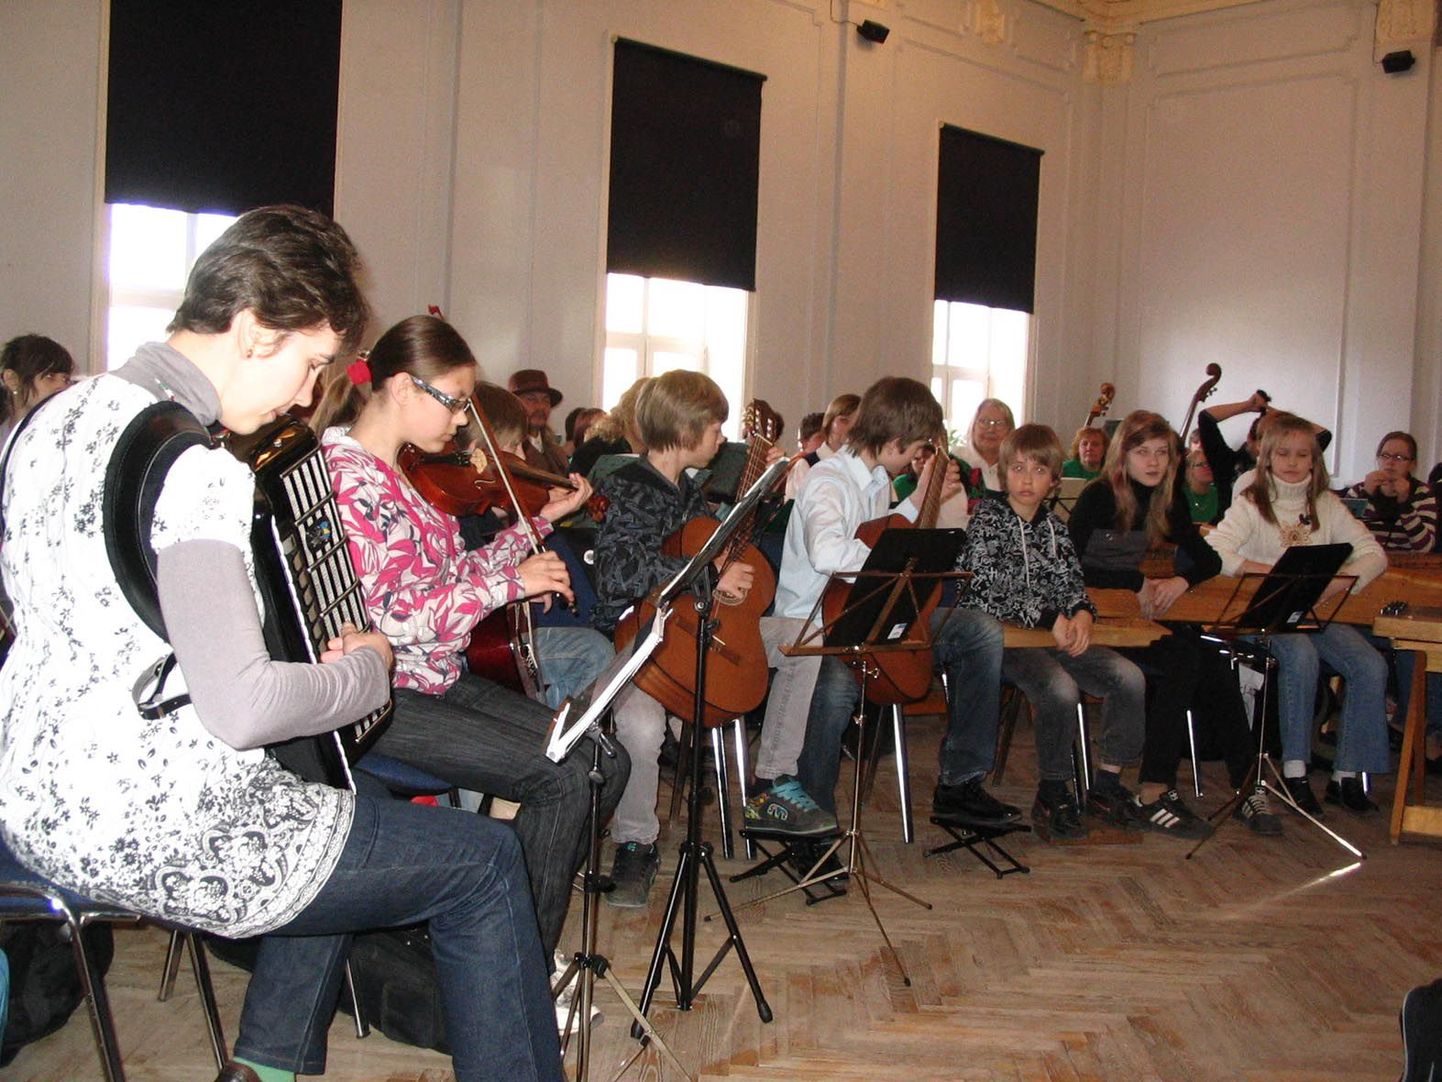 Valga muusikakooli ansambel Kirekind komisjonile kohustuslikku lugu ette mängimas.